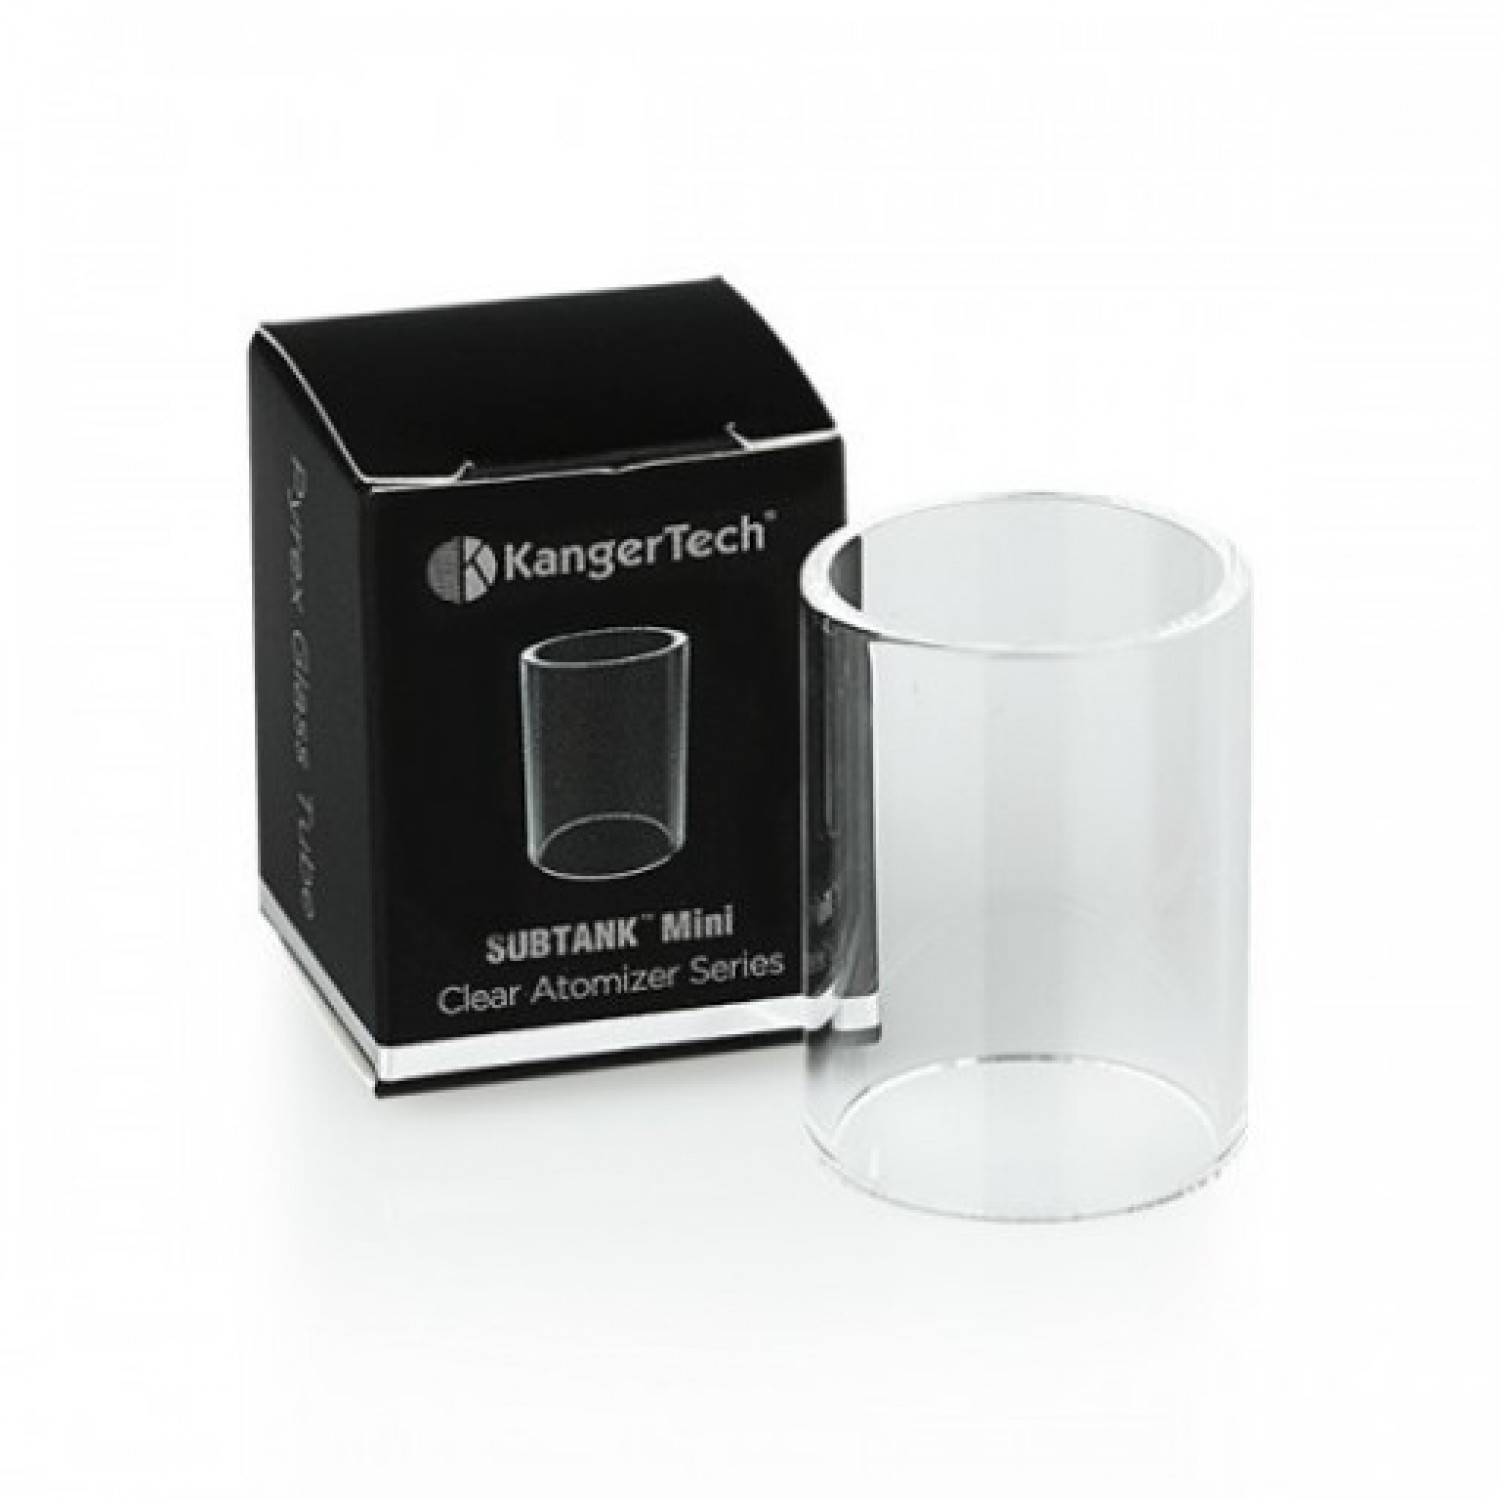 KangerTech SubTank glass